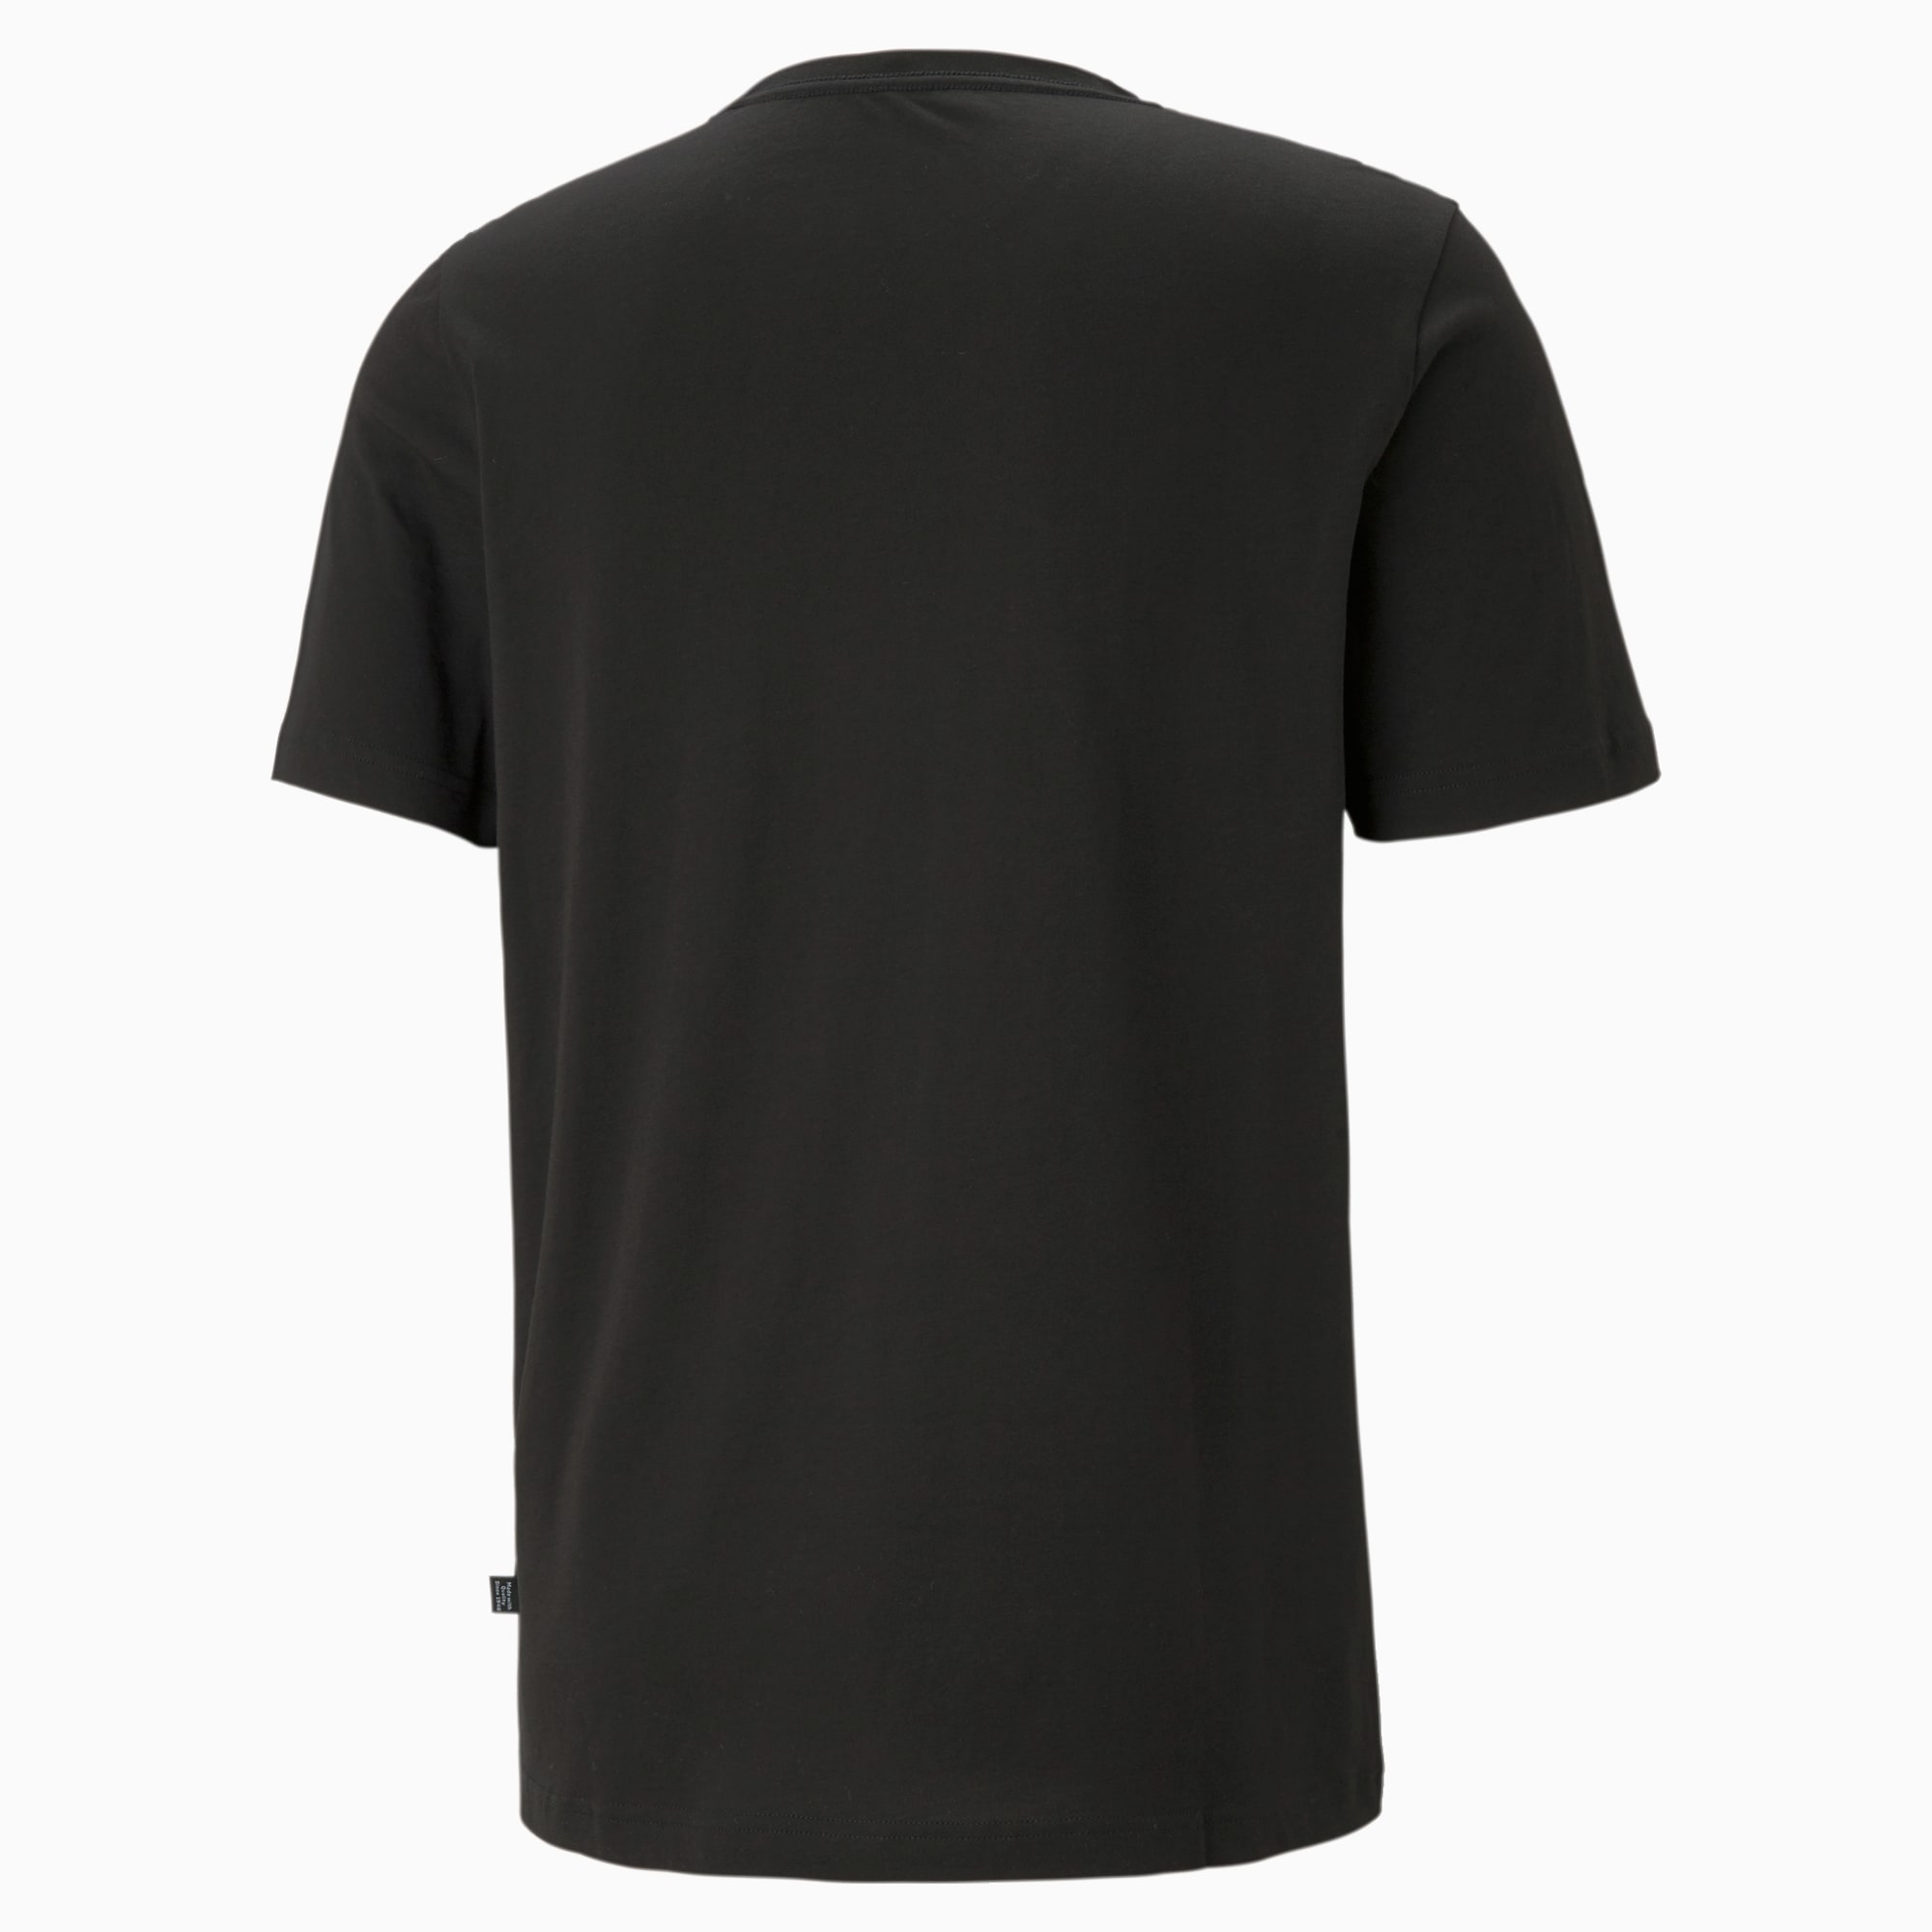 PUMA Essentials Small Logo T-Shirt Men, Black